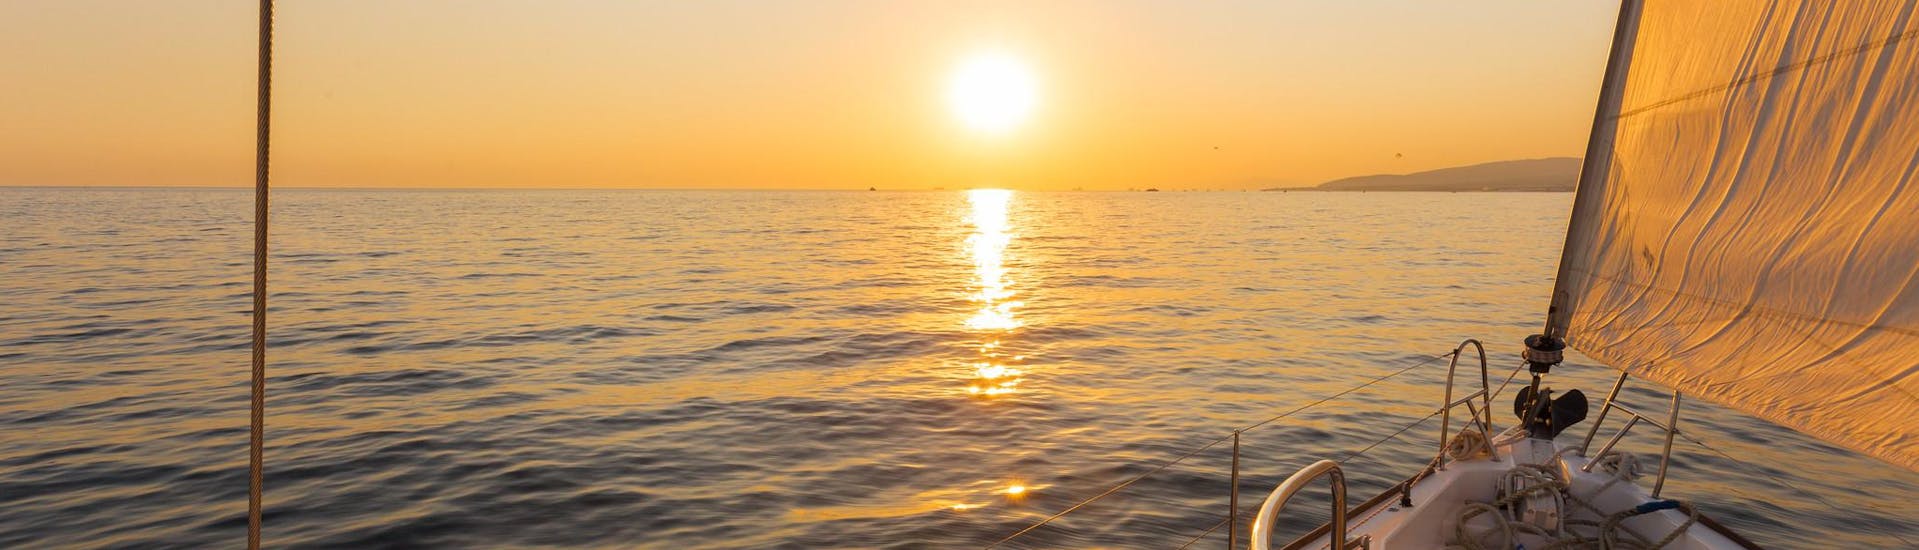 Il sole sorge durante una gita in barca all'alba.